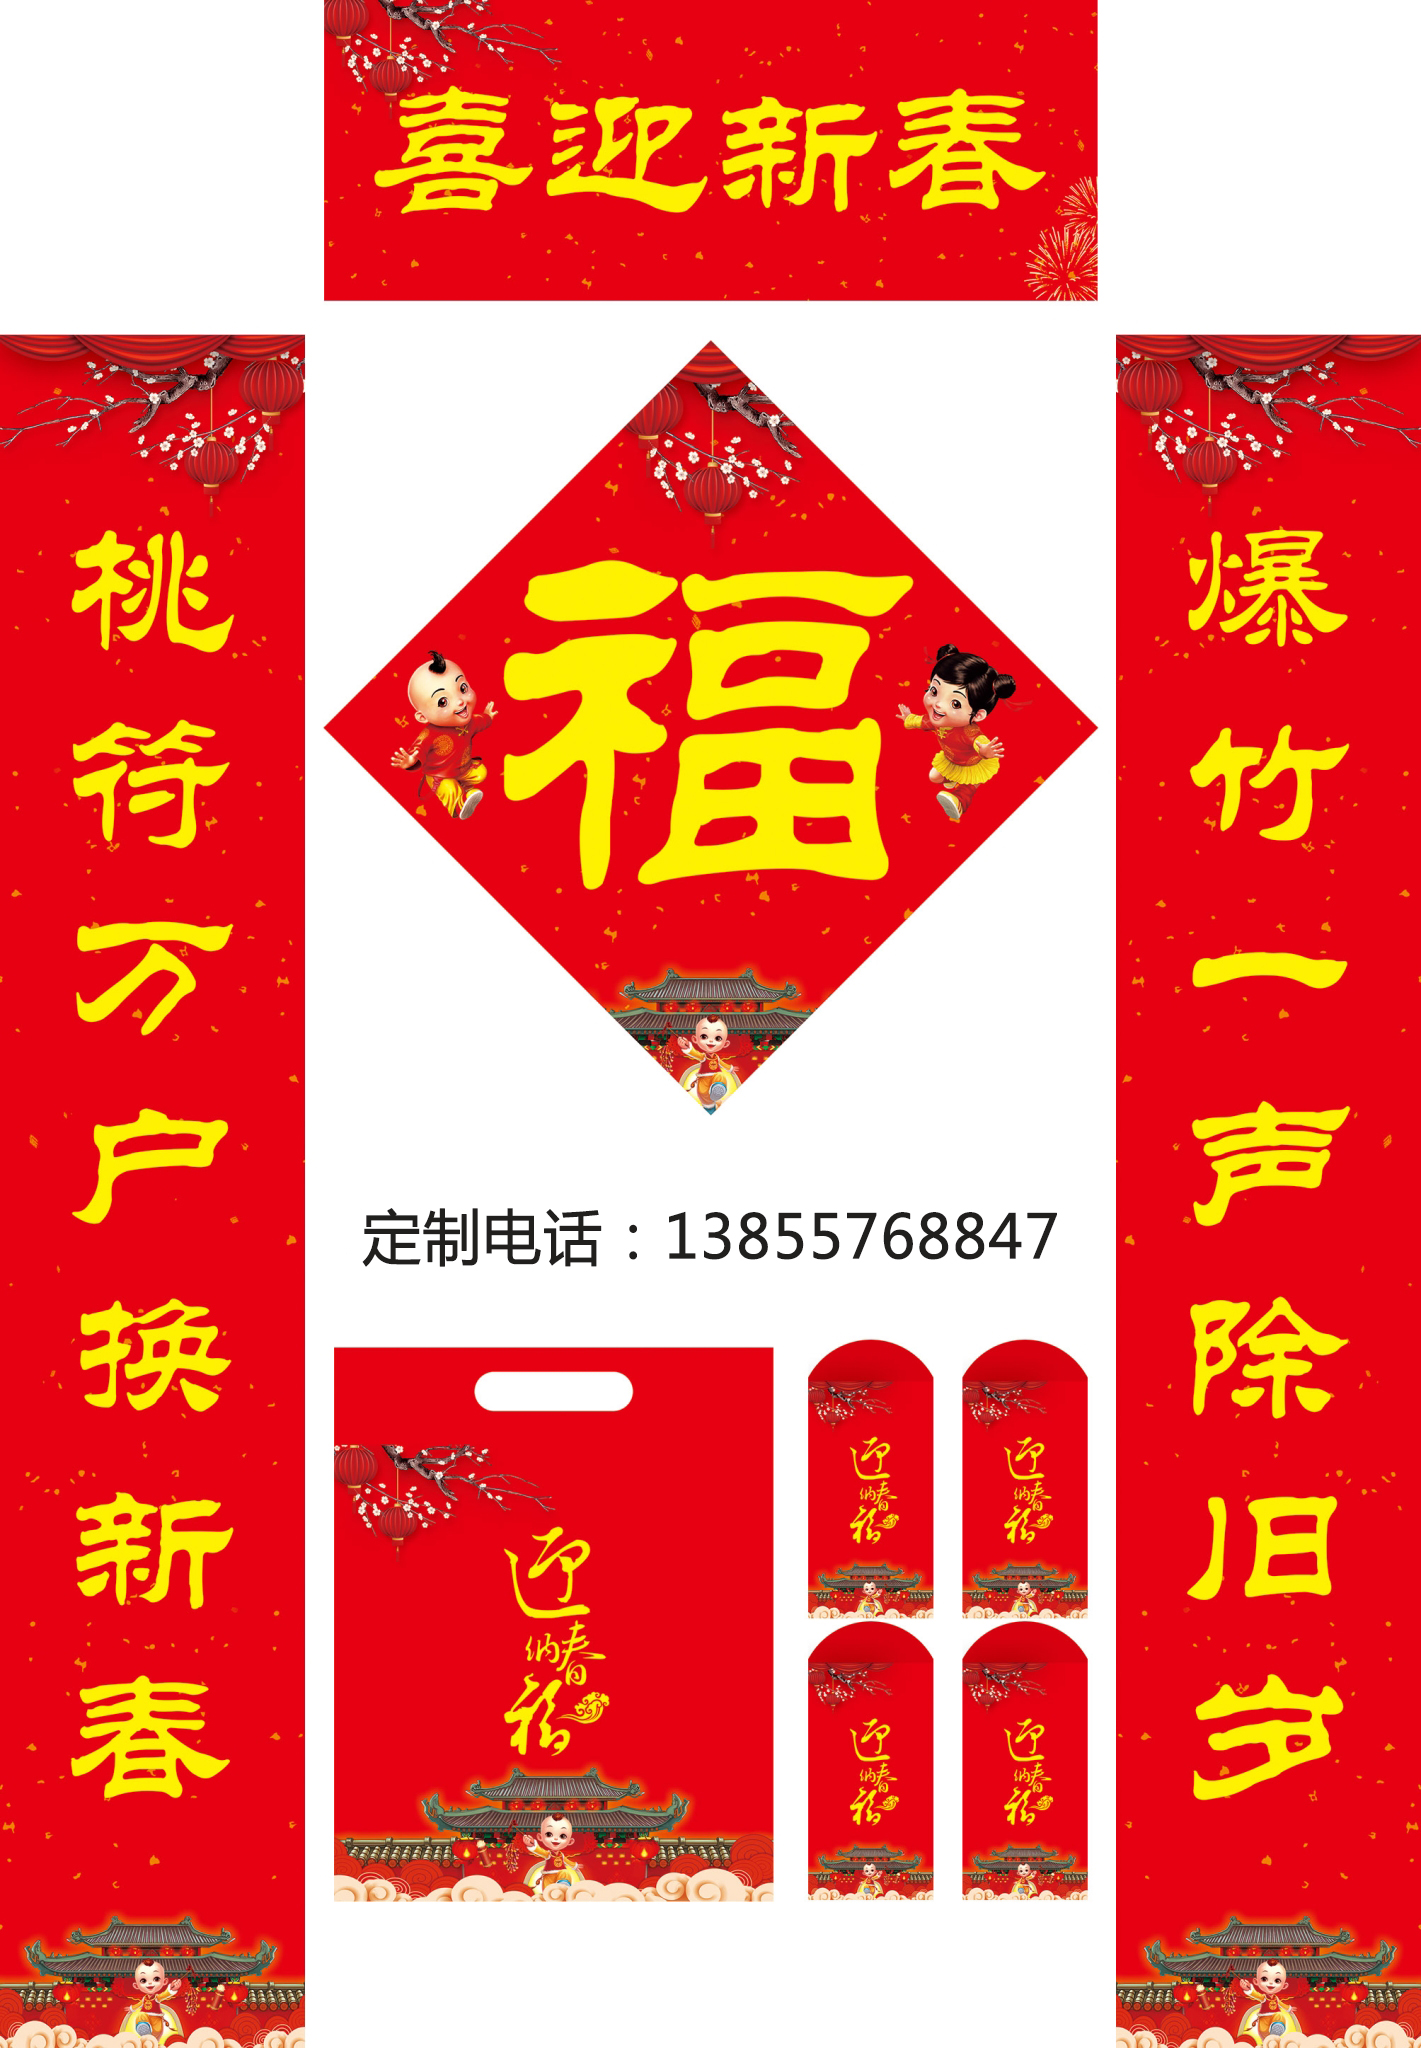 江苏春联生产厂家的地址(图2)